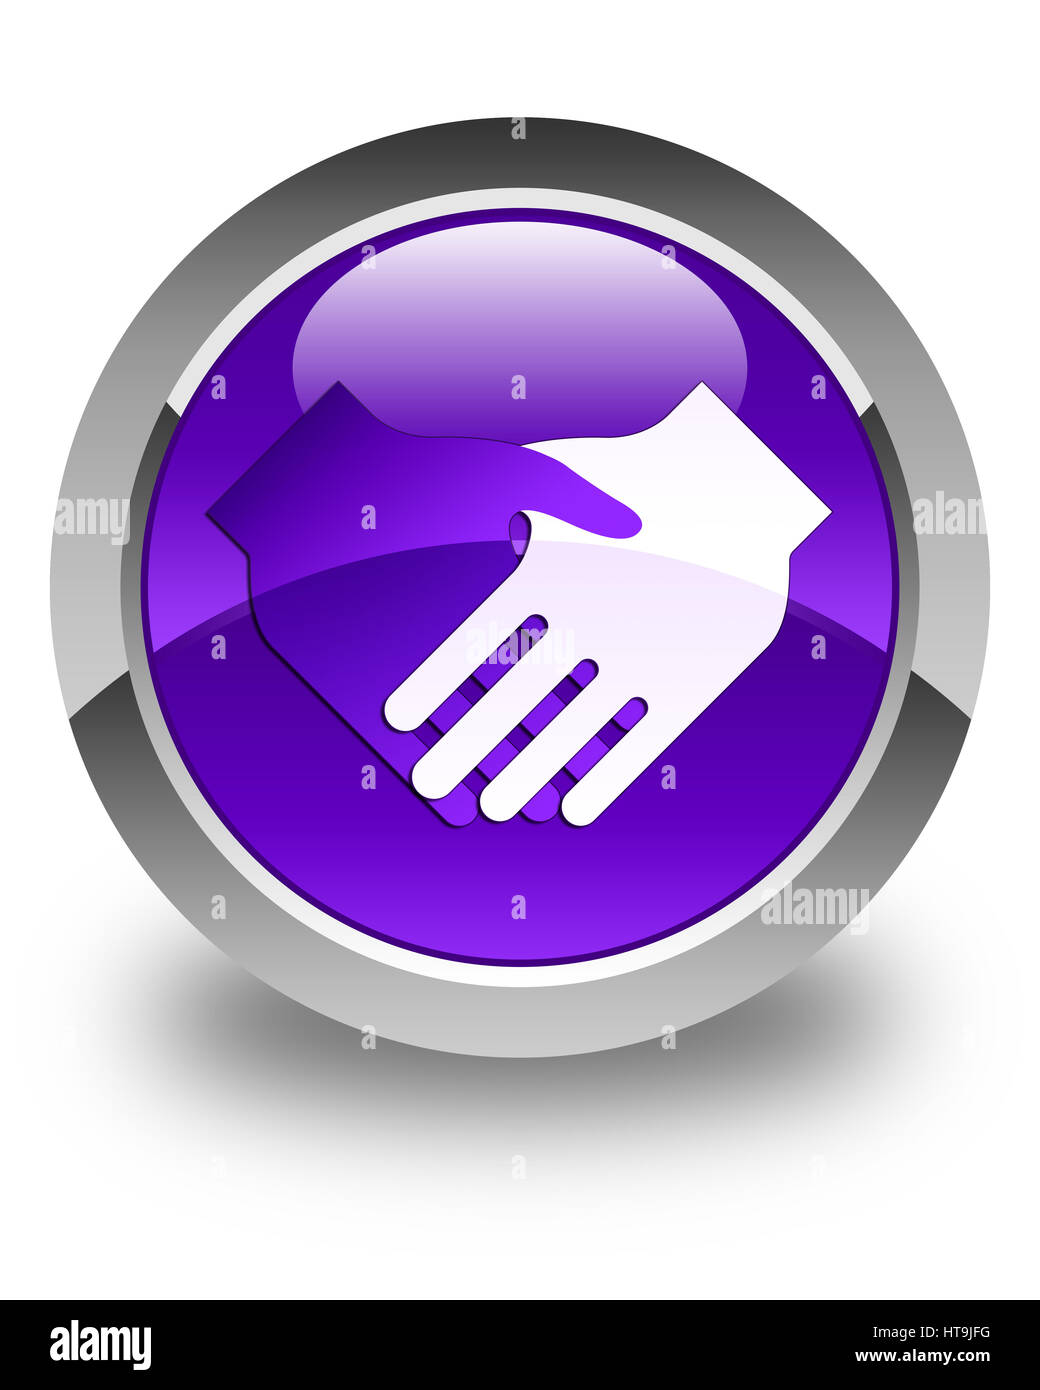 Blue Business Handshake Emoji Isolated On Stock Illustration